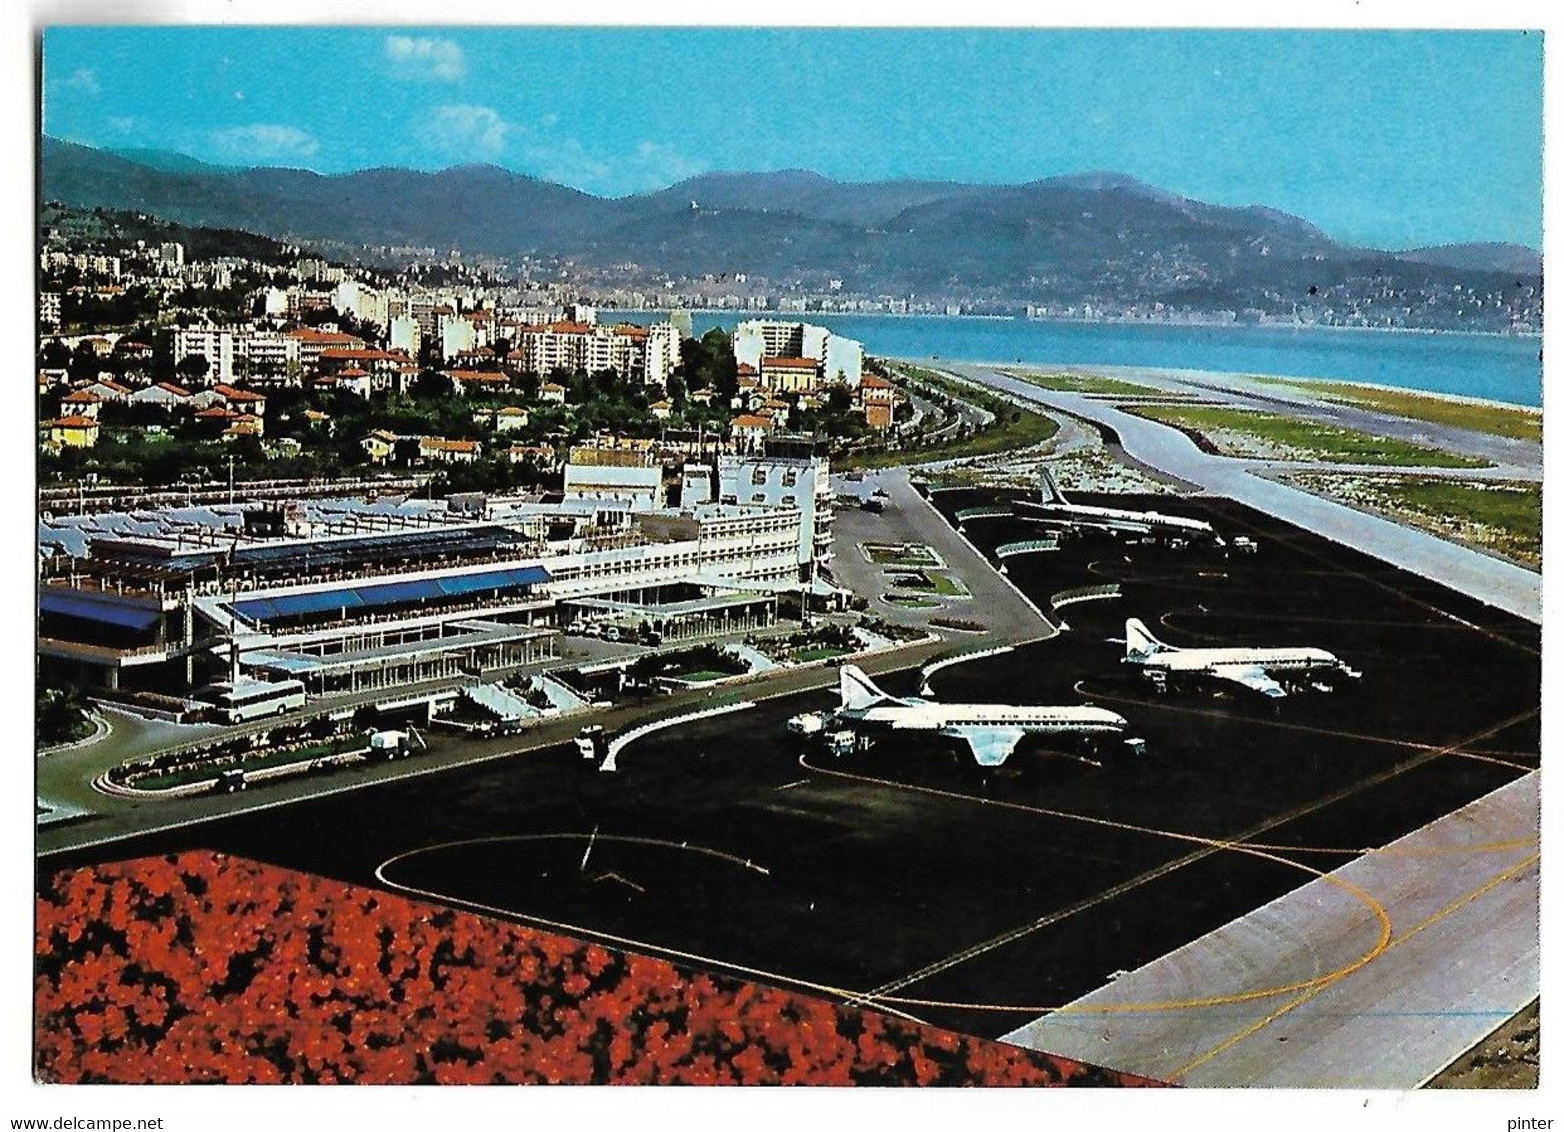 NICE - Vue Aérienne De L'Aéroport Nice-Côte D'Azur - Luchtvaart - Luchthaven